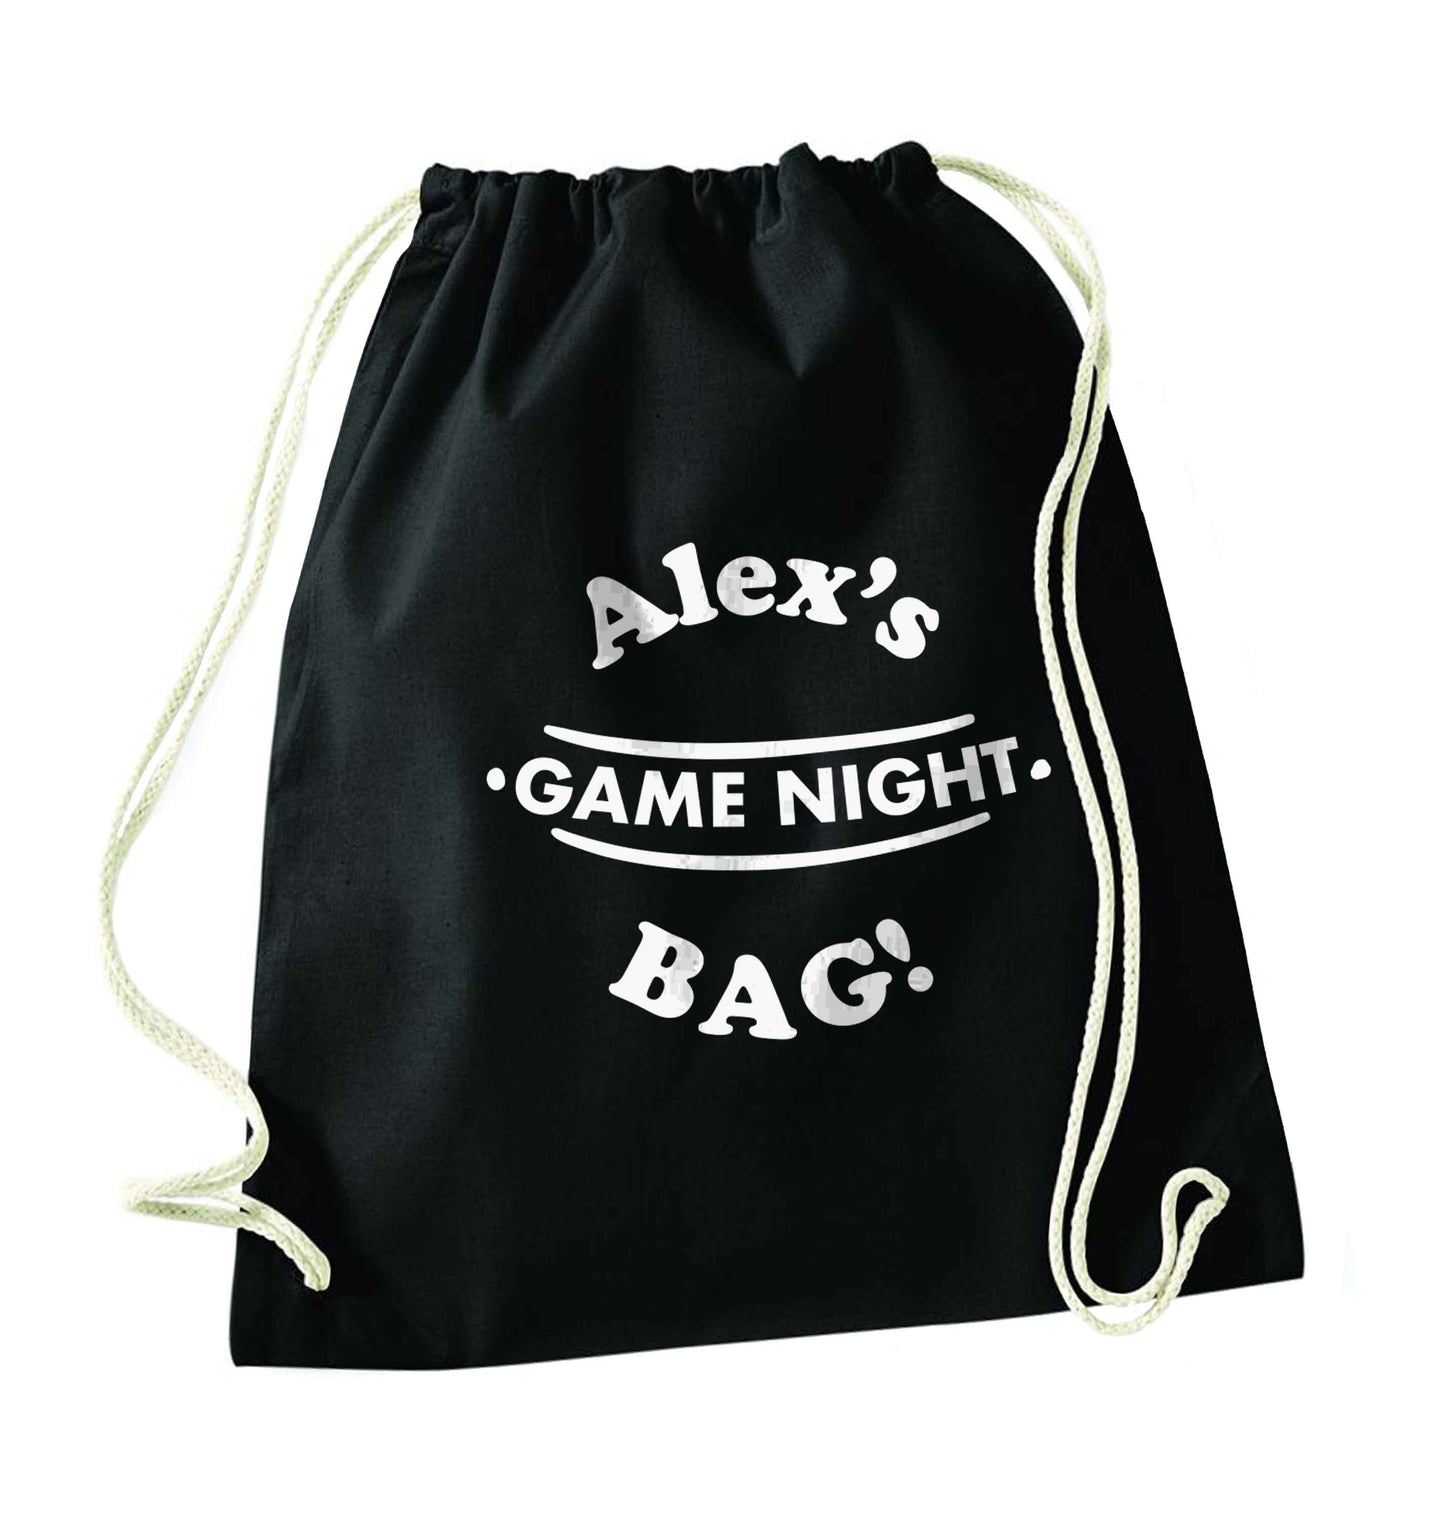 Personalised game night bag black drawstring bag